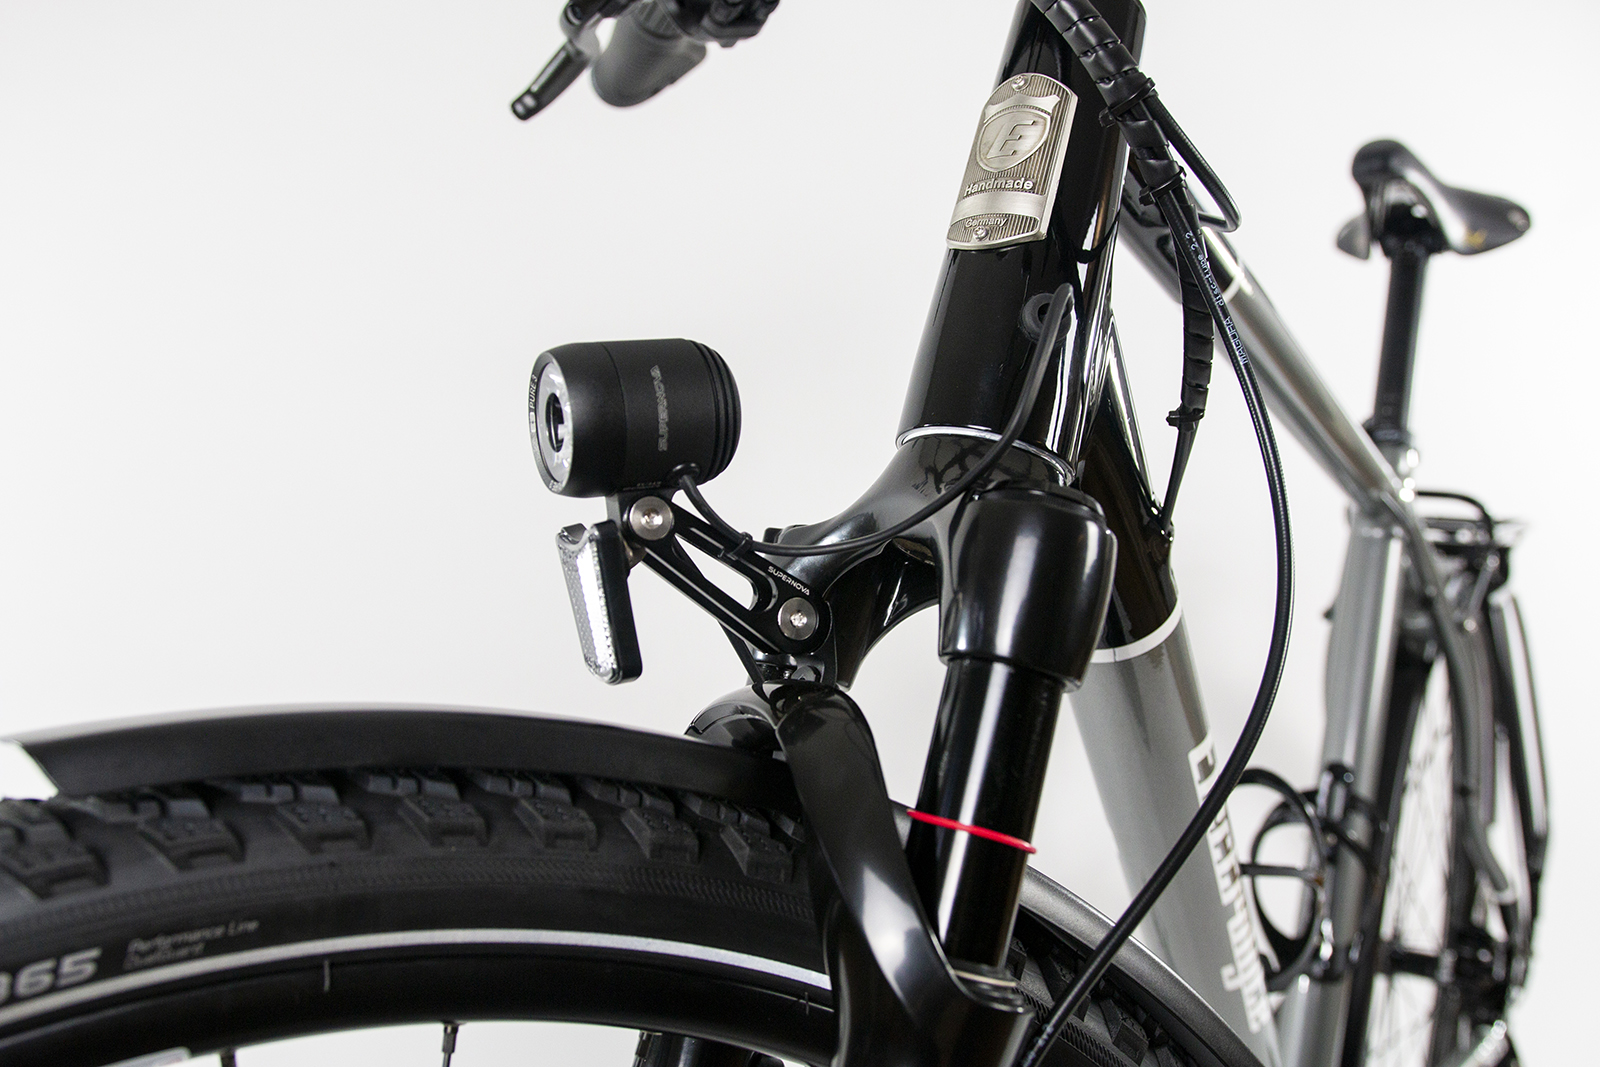 Reflektierende Elastische Fahrradgurte Eignen Sich Für Nachtläufe